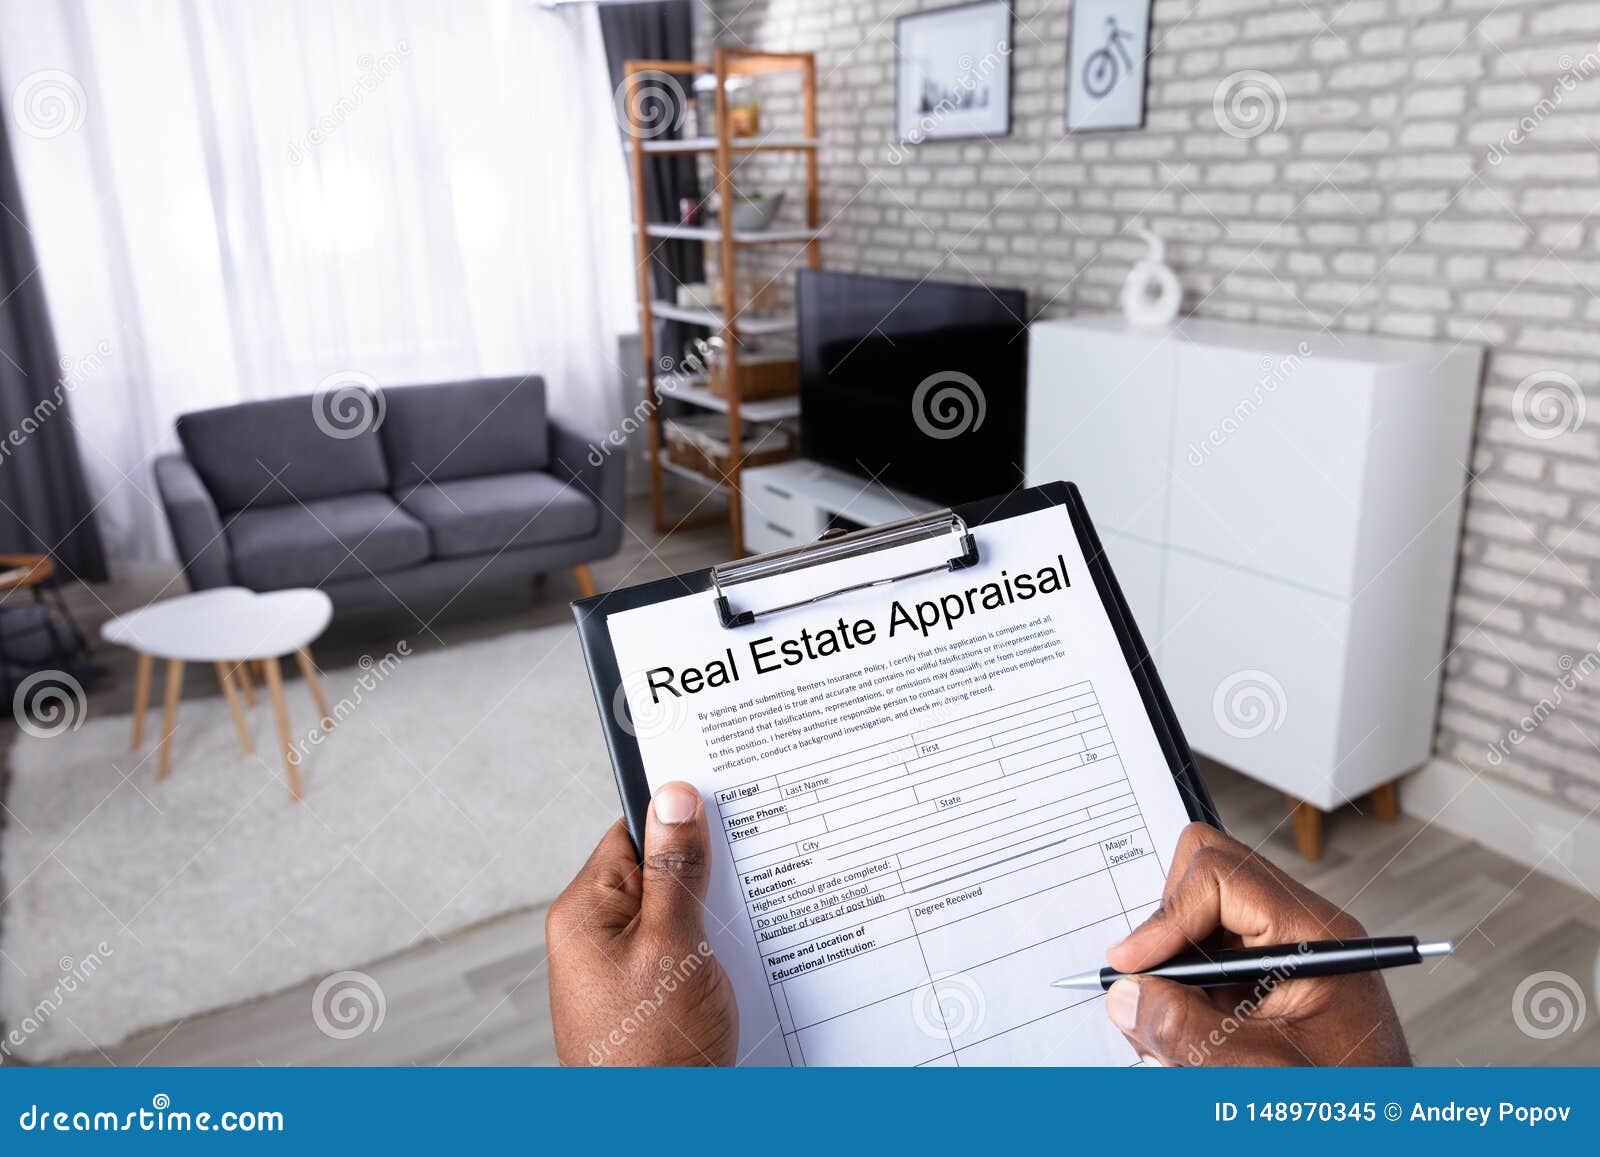 man filling real estate appraisal form